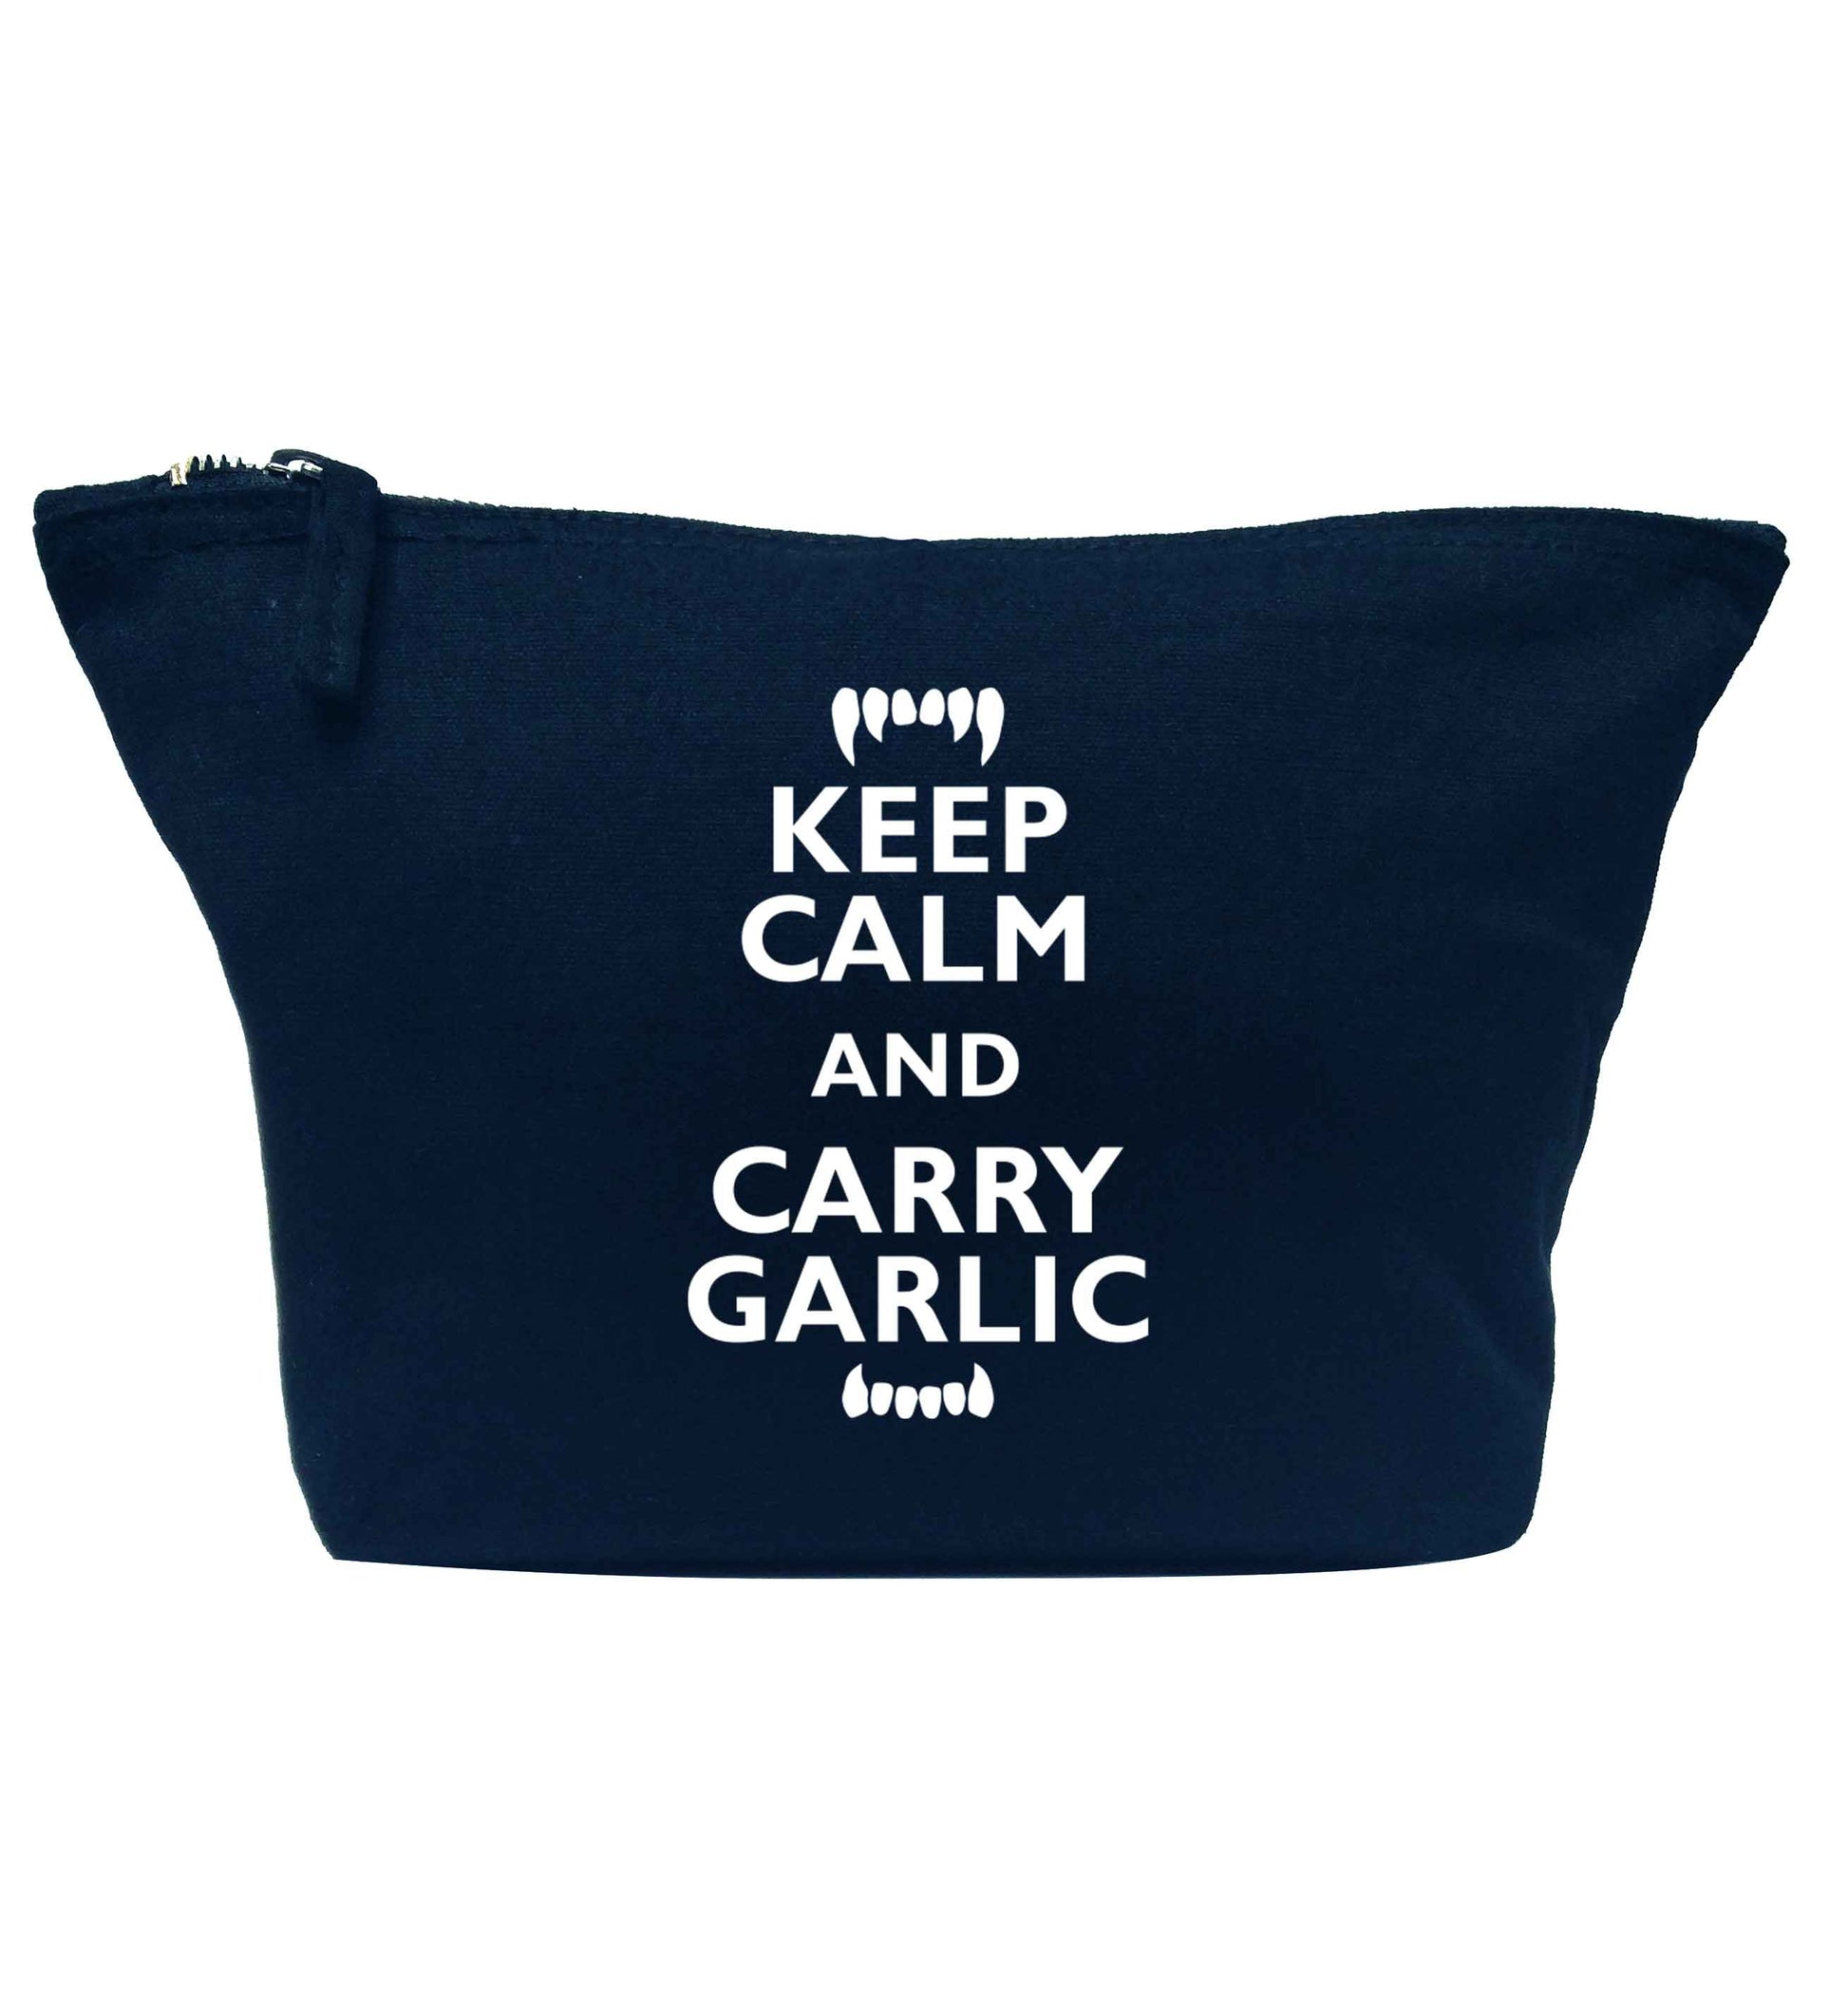 Keep calm and carry garlic navy makeup bag